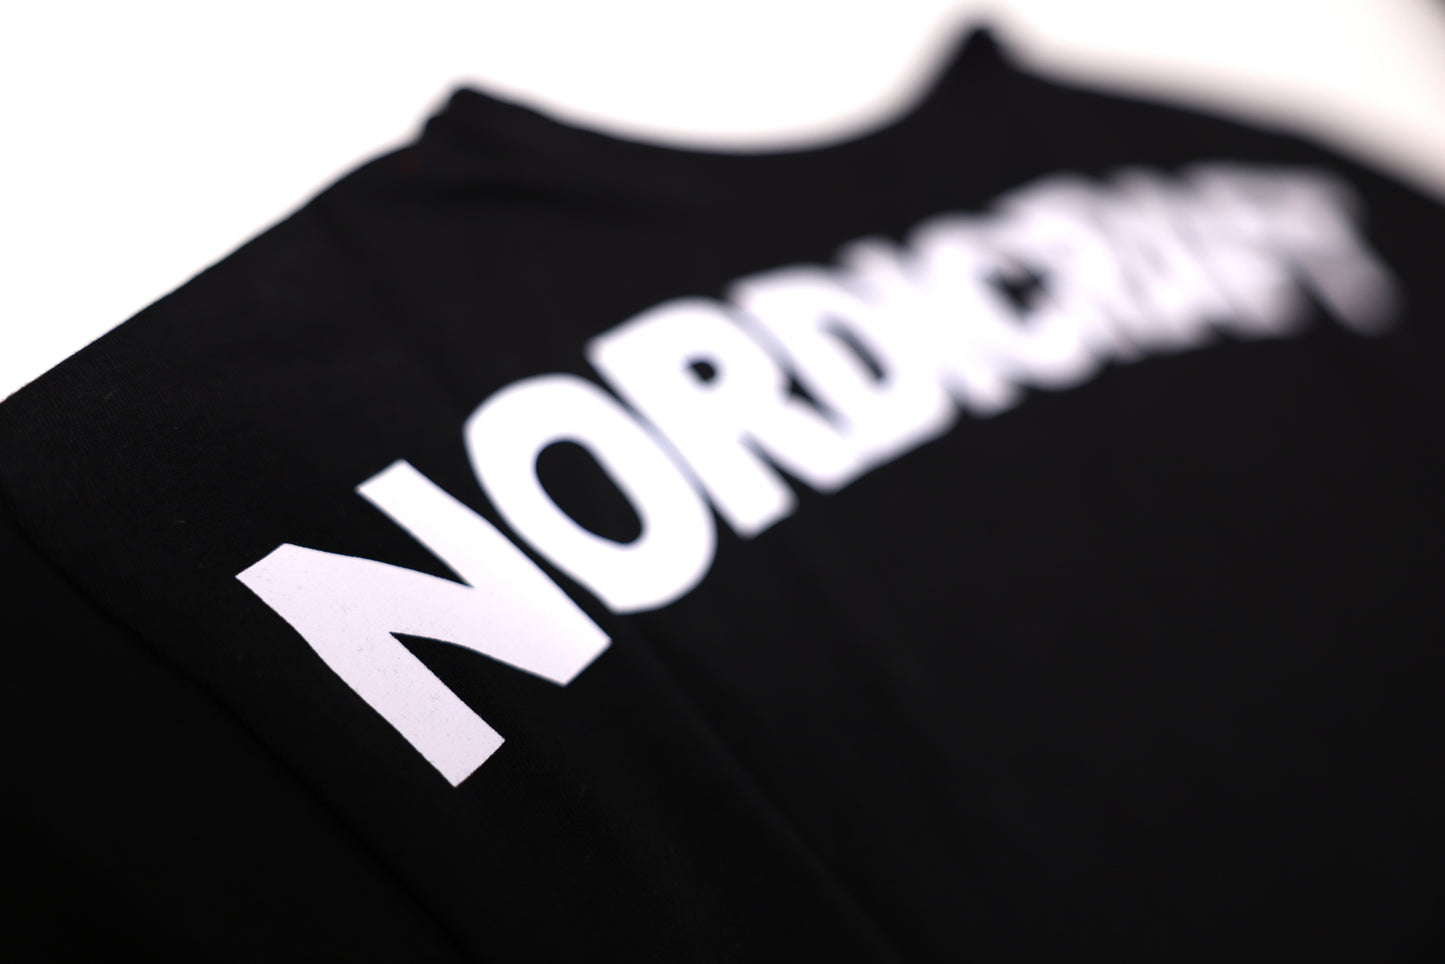 Nordicraft T shirt